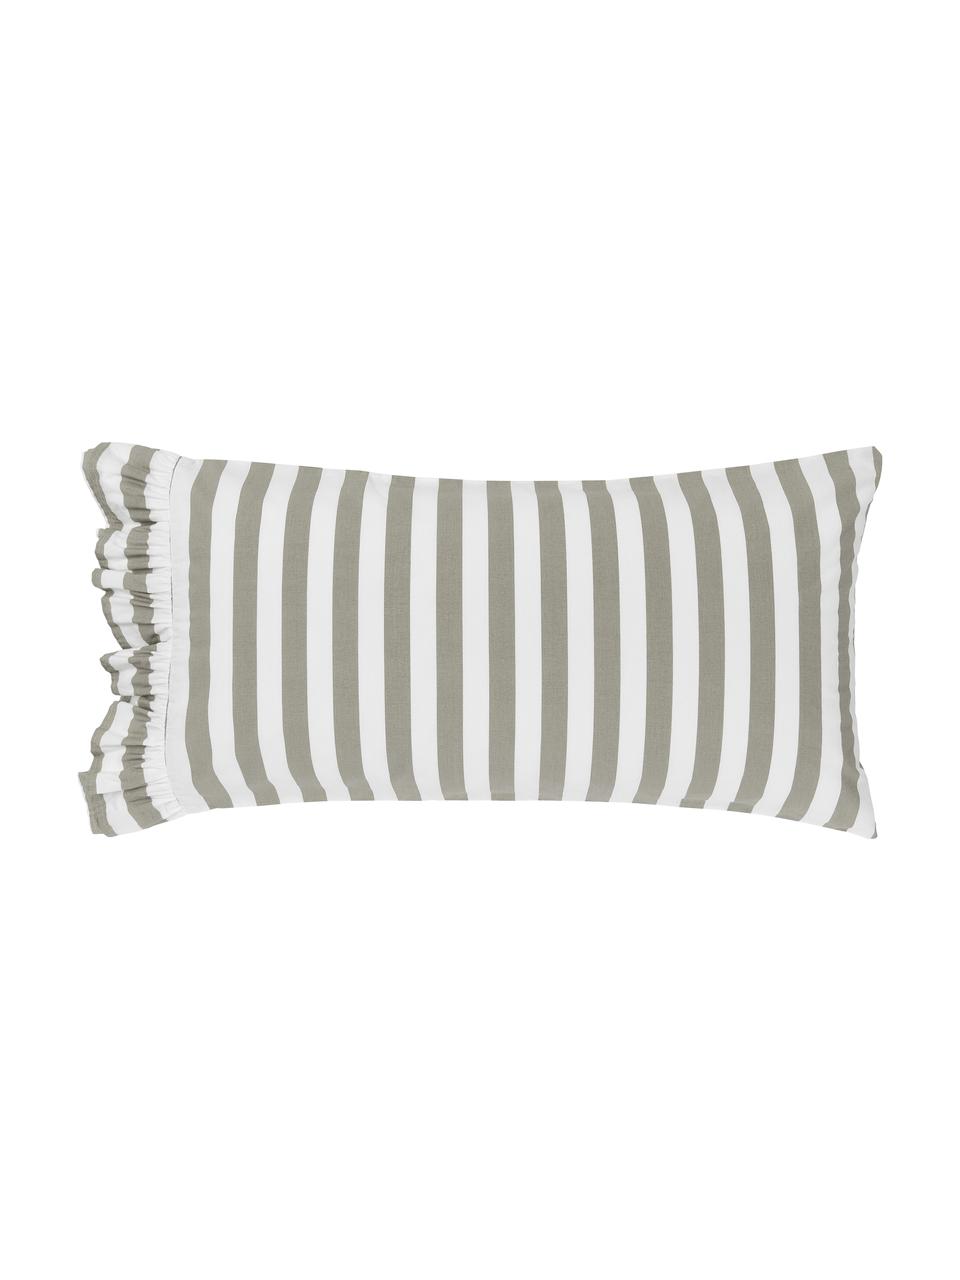 Poszewka na poduszkę z bawełny z efektem sprania Averni, 2 szt., Beżowy, biały, S 40 x D 80 cm